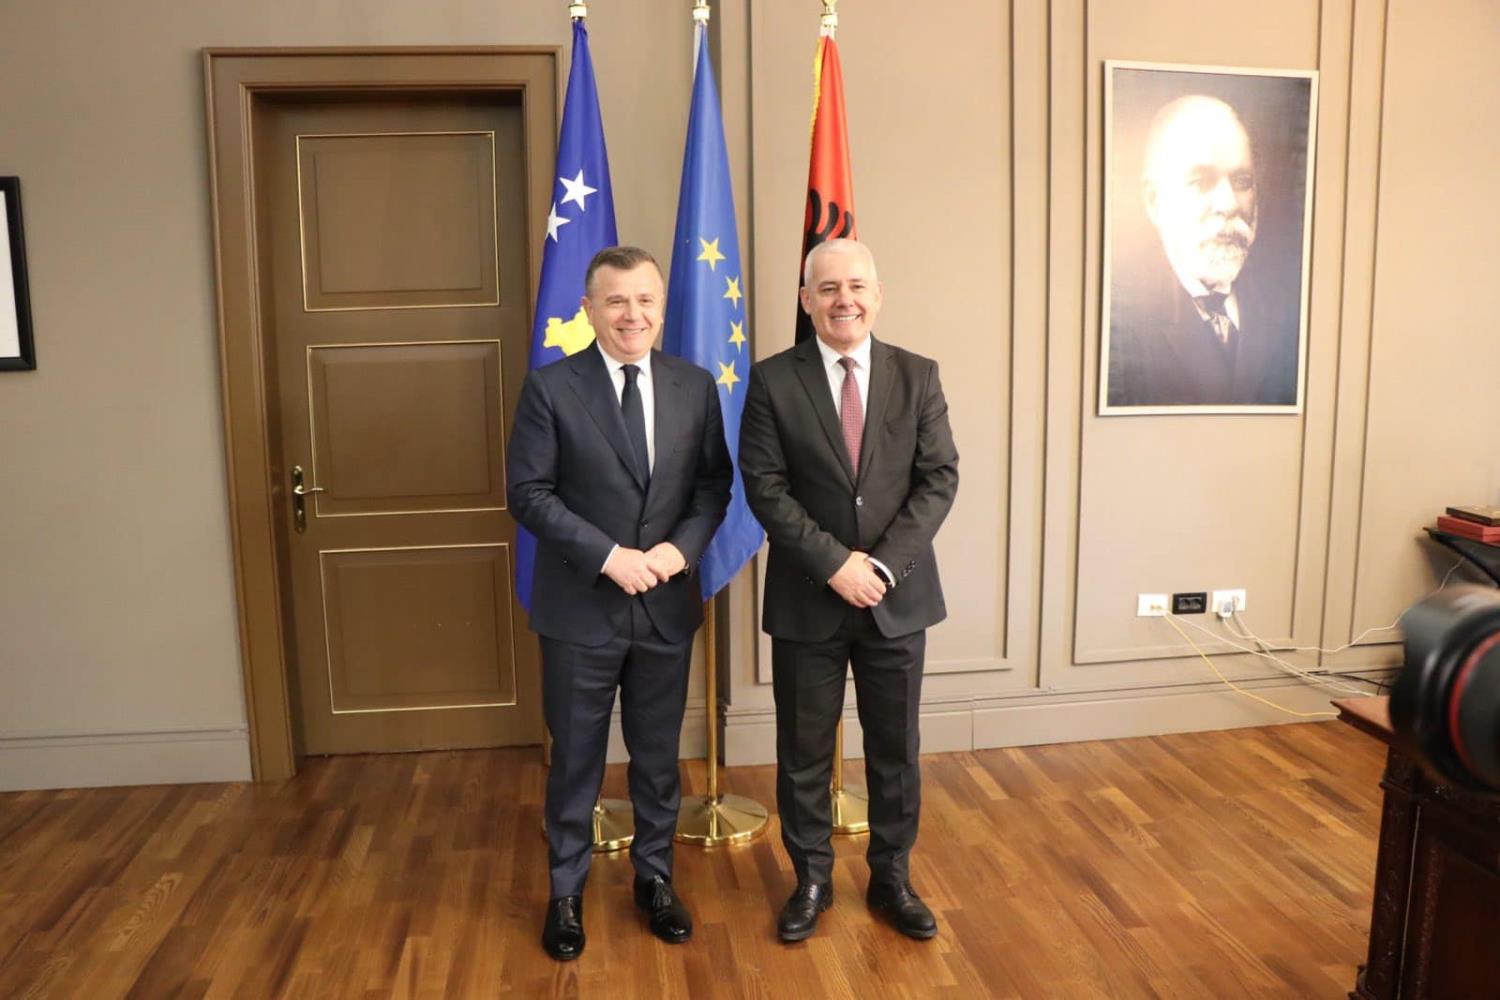 Ministri i Punëve të Brendshme, z. Xhelal Sveçla, në vizitën e tij zyrtare në Republikën e Shqipërisë, u takua me homologun e tij, Ministrin z. Taulant Balla. 